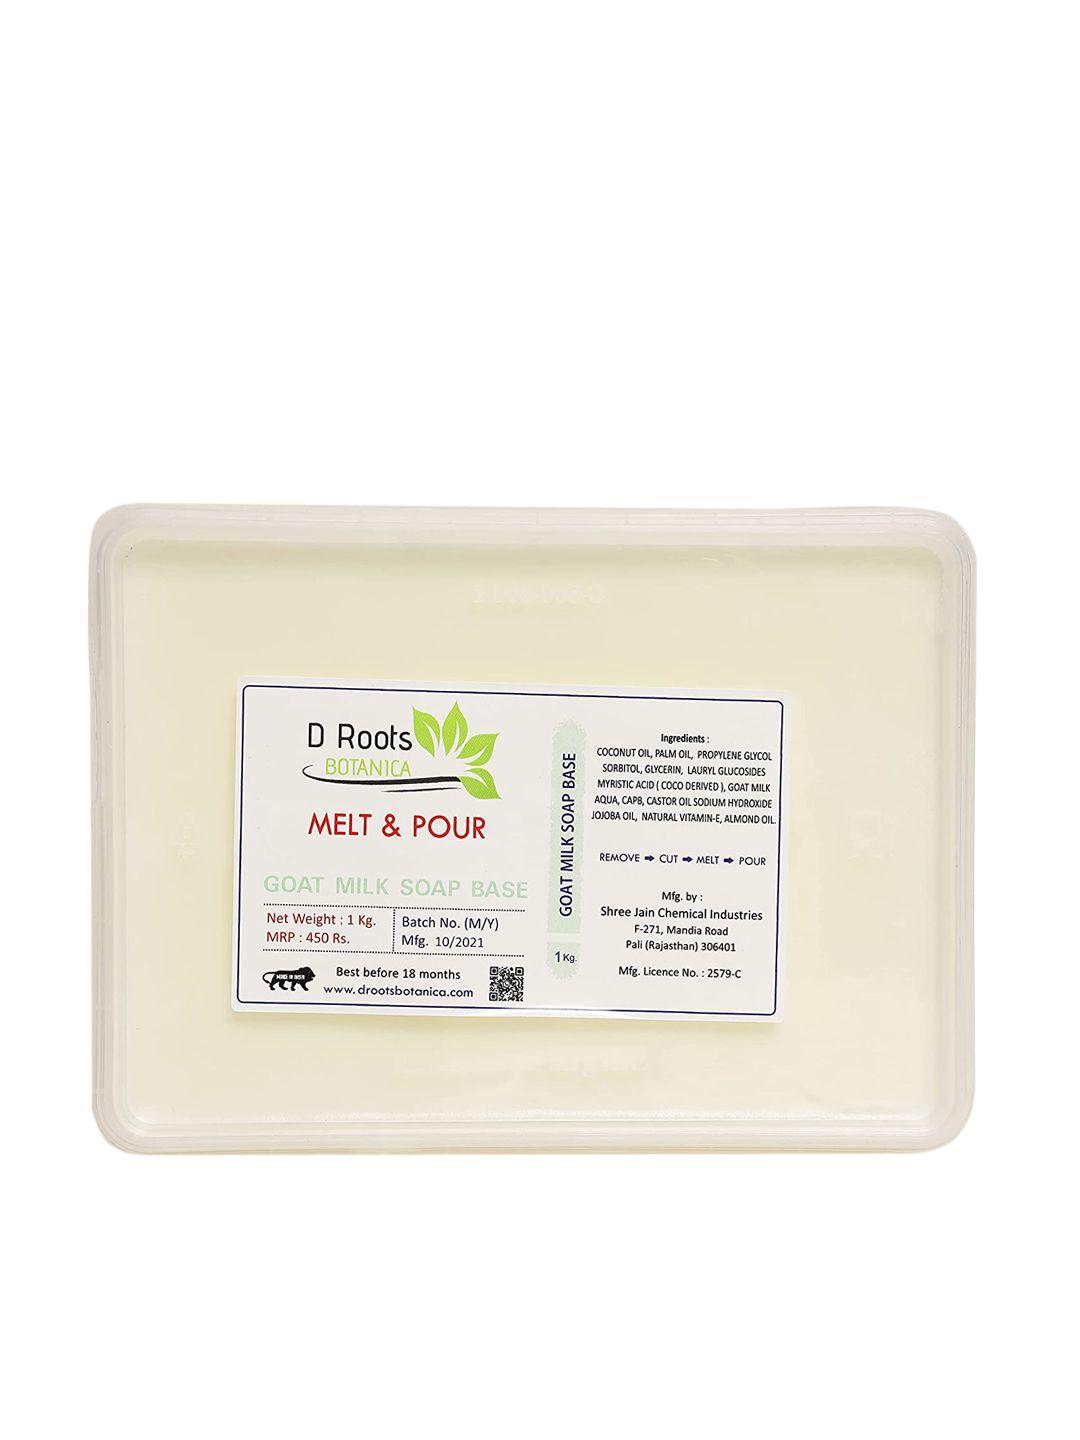 d roots botanica melt & pour goat milk soap base - 1 kg